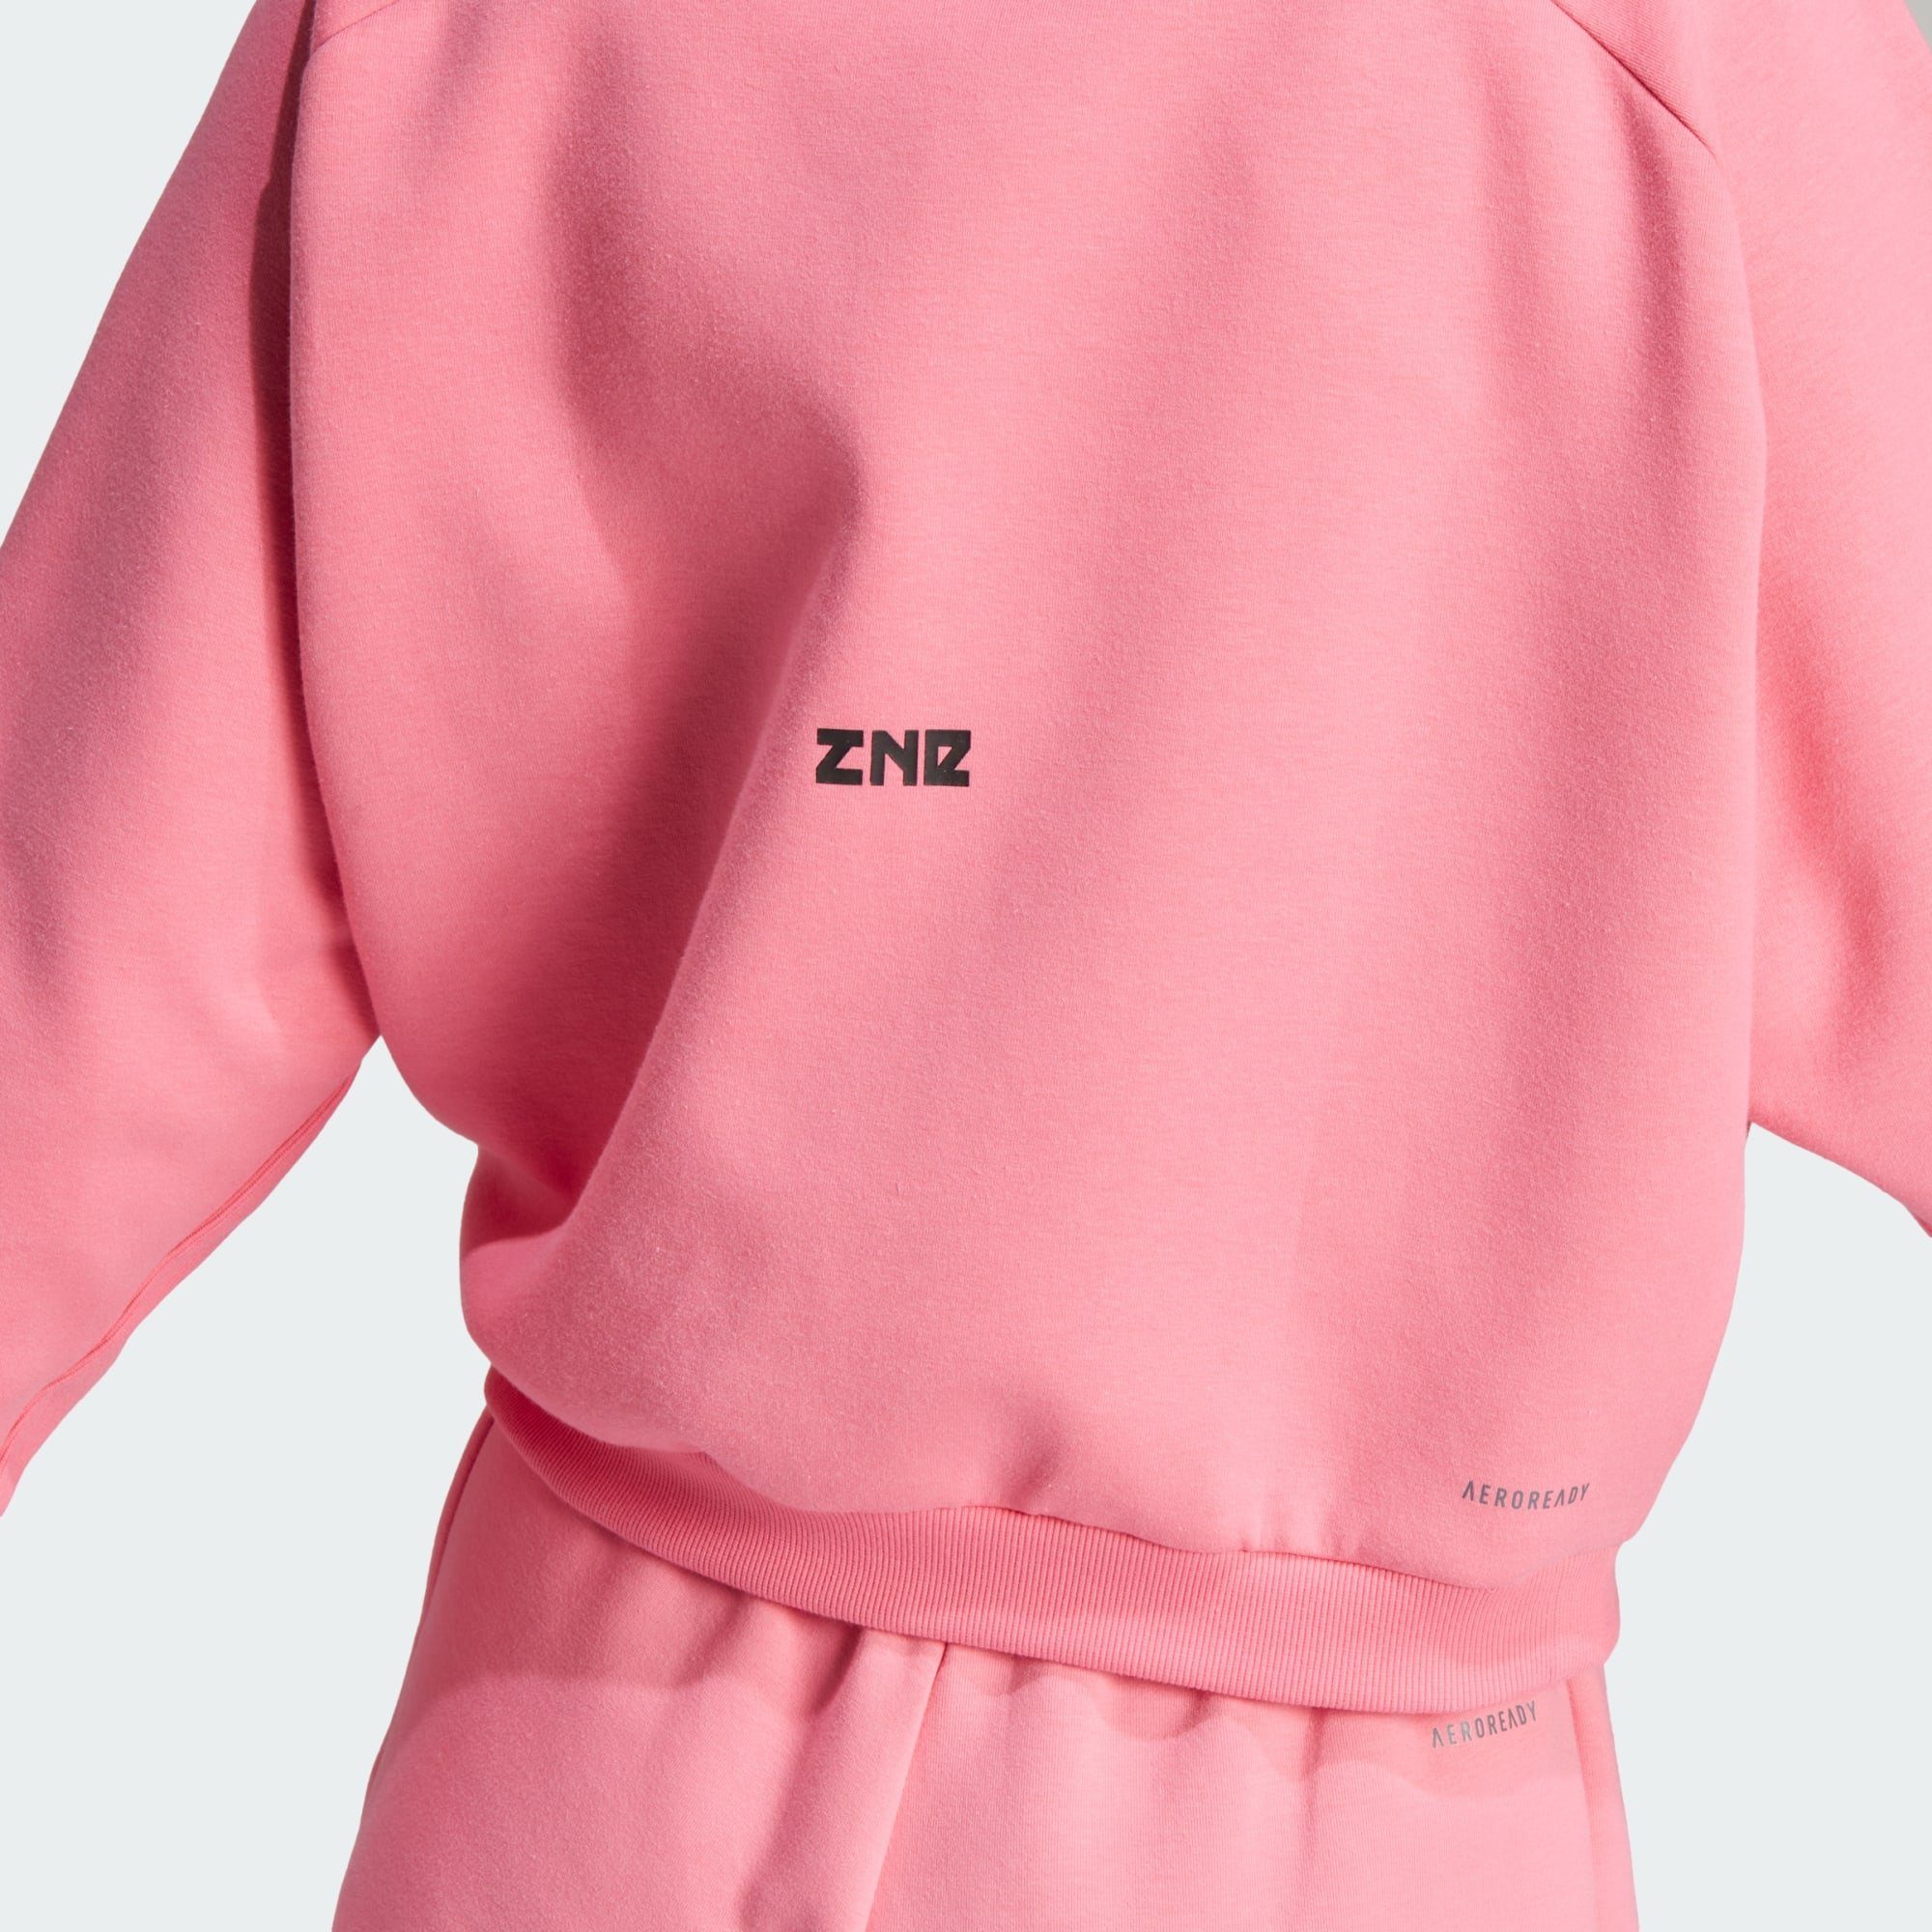 Hoodie Fusion Z.N.E. adidas Pink ZIP-HOODIE Sportswear ADIDAS